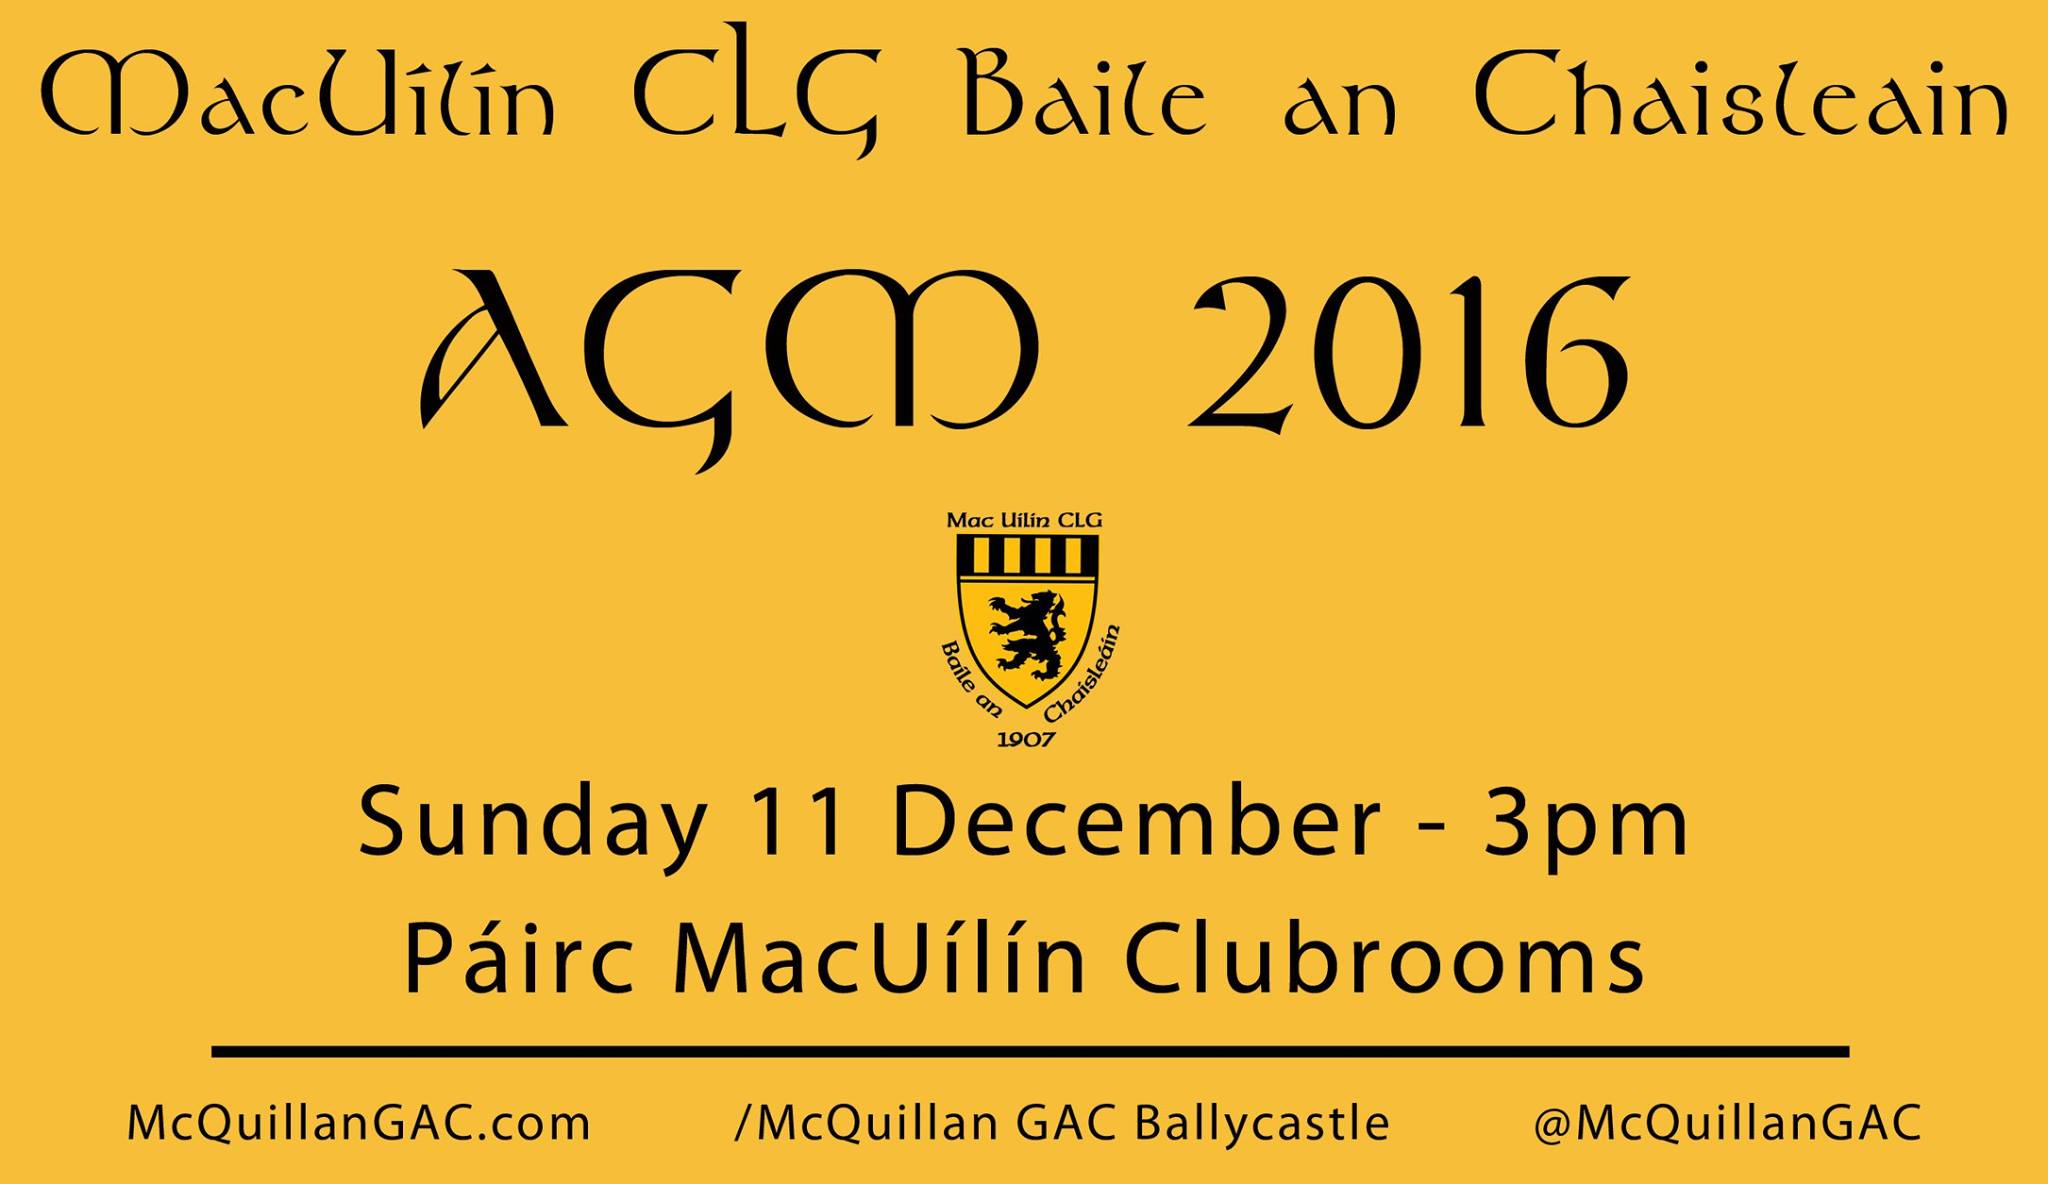 MacUílín CLG Baile an Chaisleáin Annual General Meeting – Sunday 11 December 2016